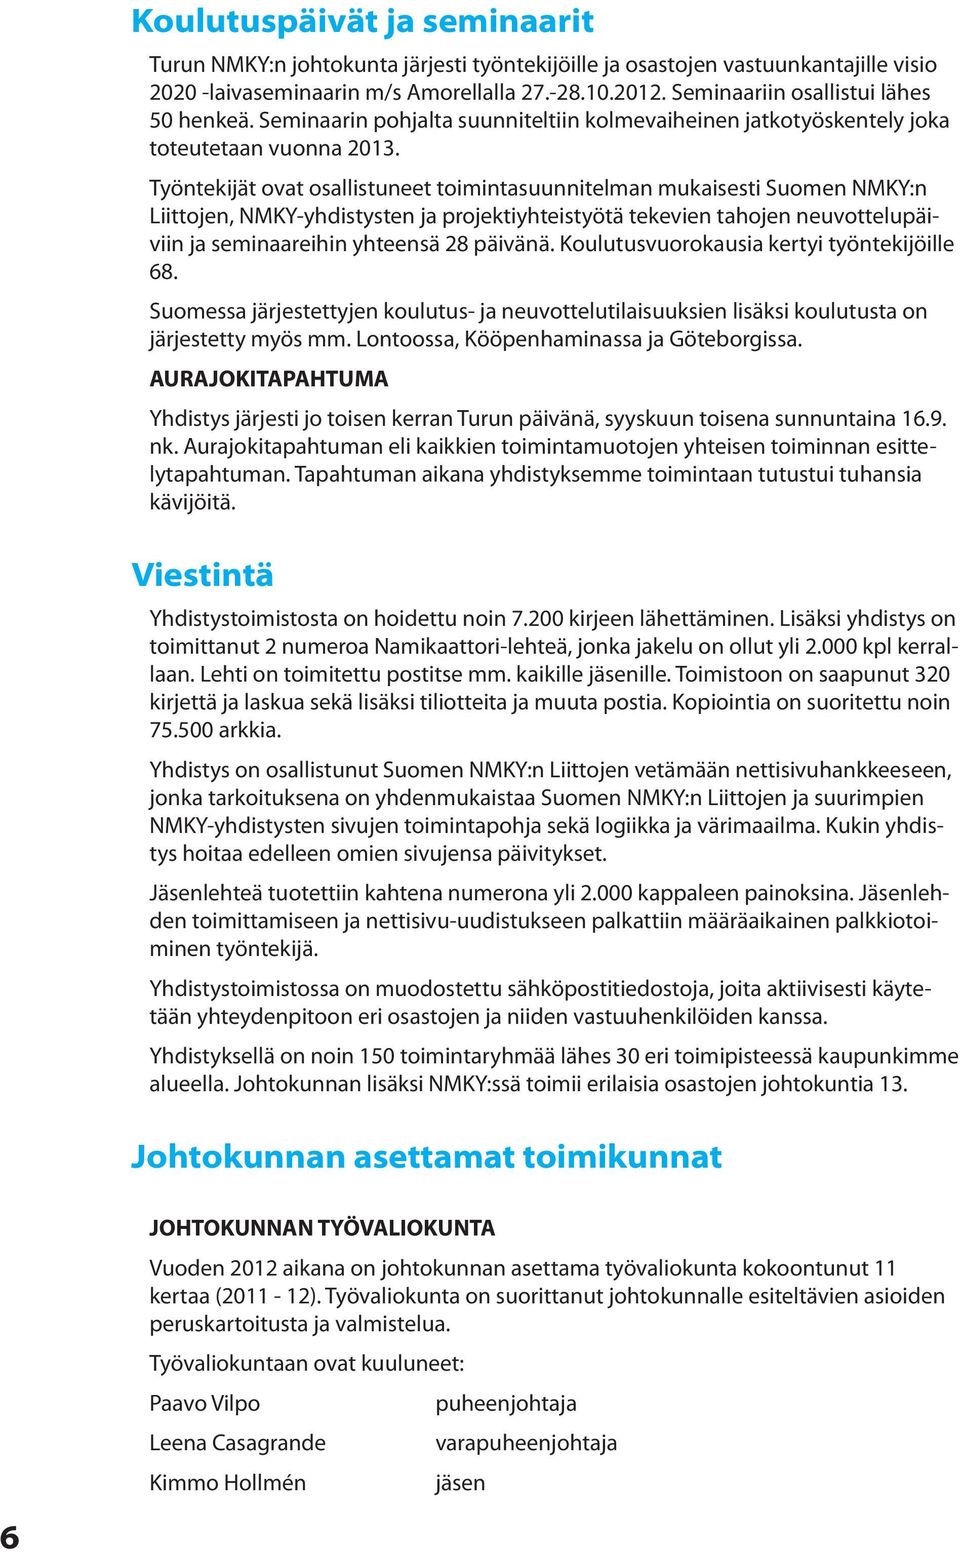 Työntekijät ovat osallistuneet toimintasuunnitelman mukaisesti Suomen NMKY:n Liittojen, NMKY-yhdistysten ja projektiyhteistyötä tekevien tahojen neuvottelupäiviin ja seminaareihin yhteensä 28 päivänä.